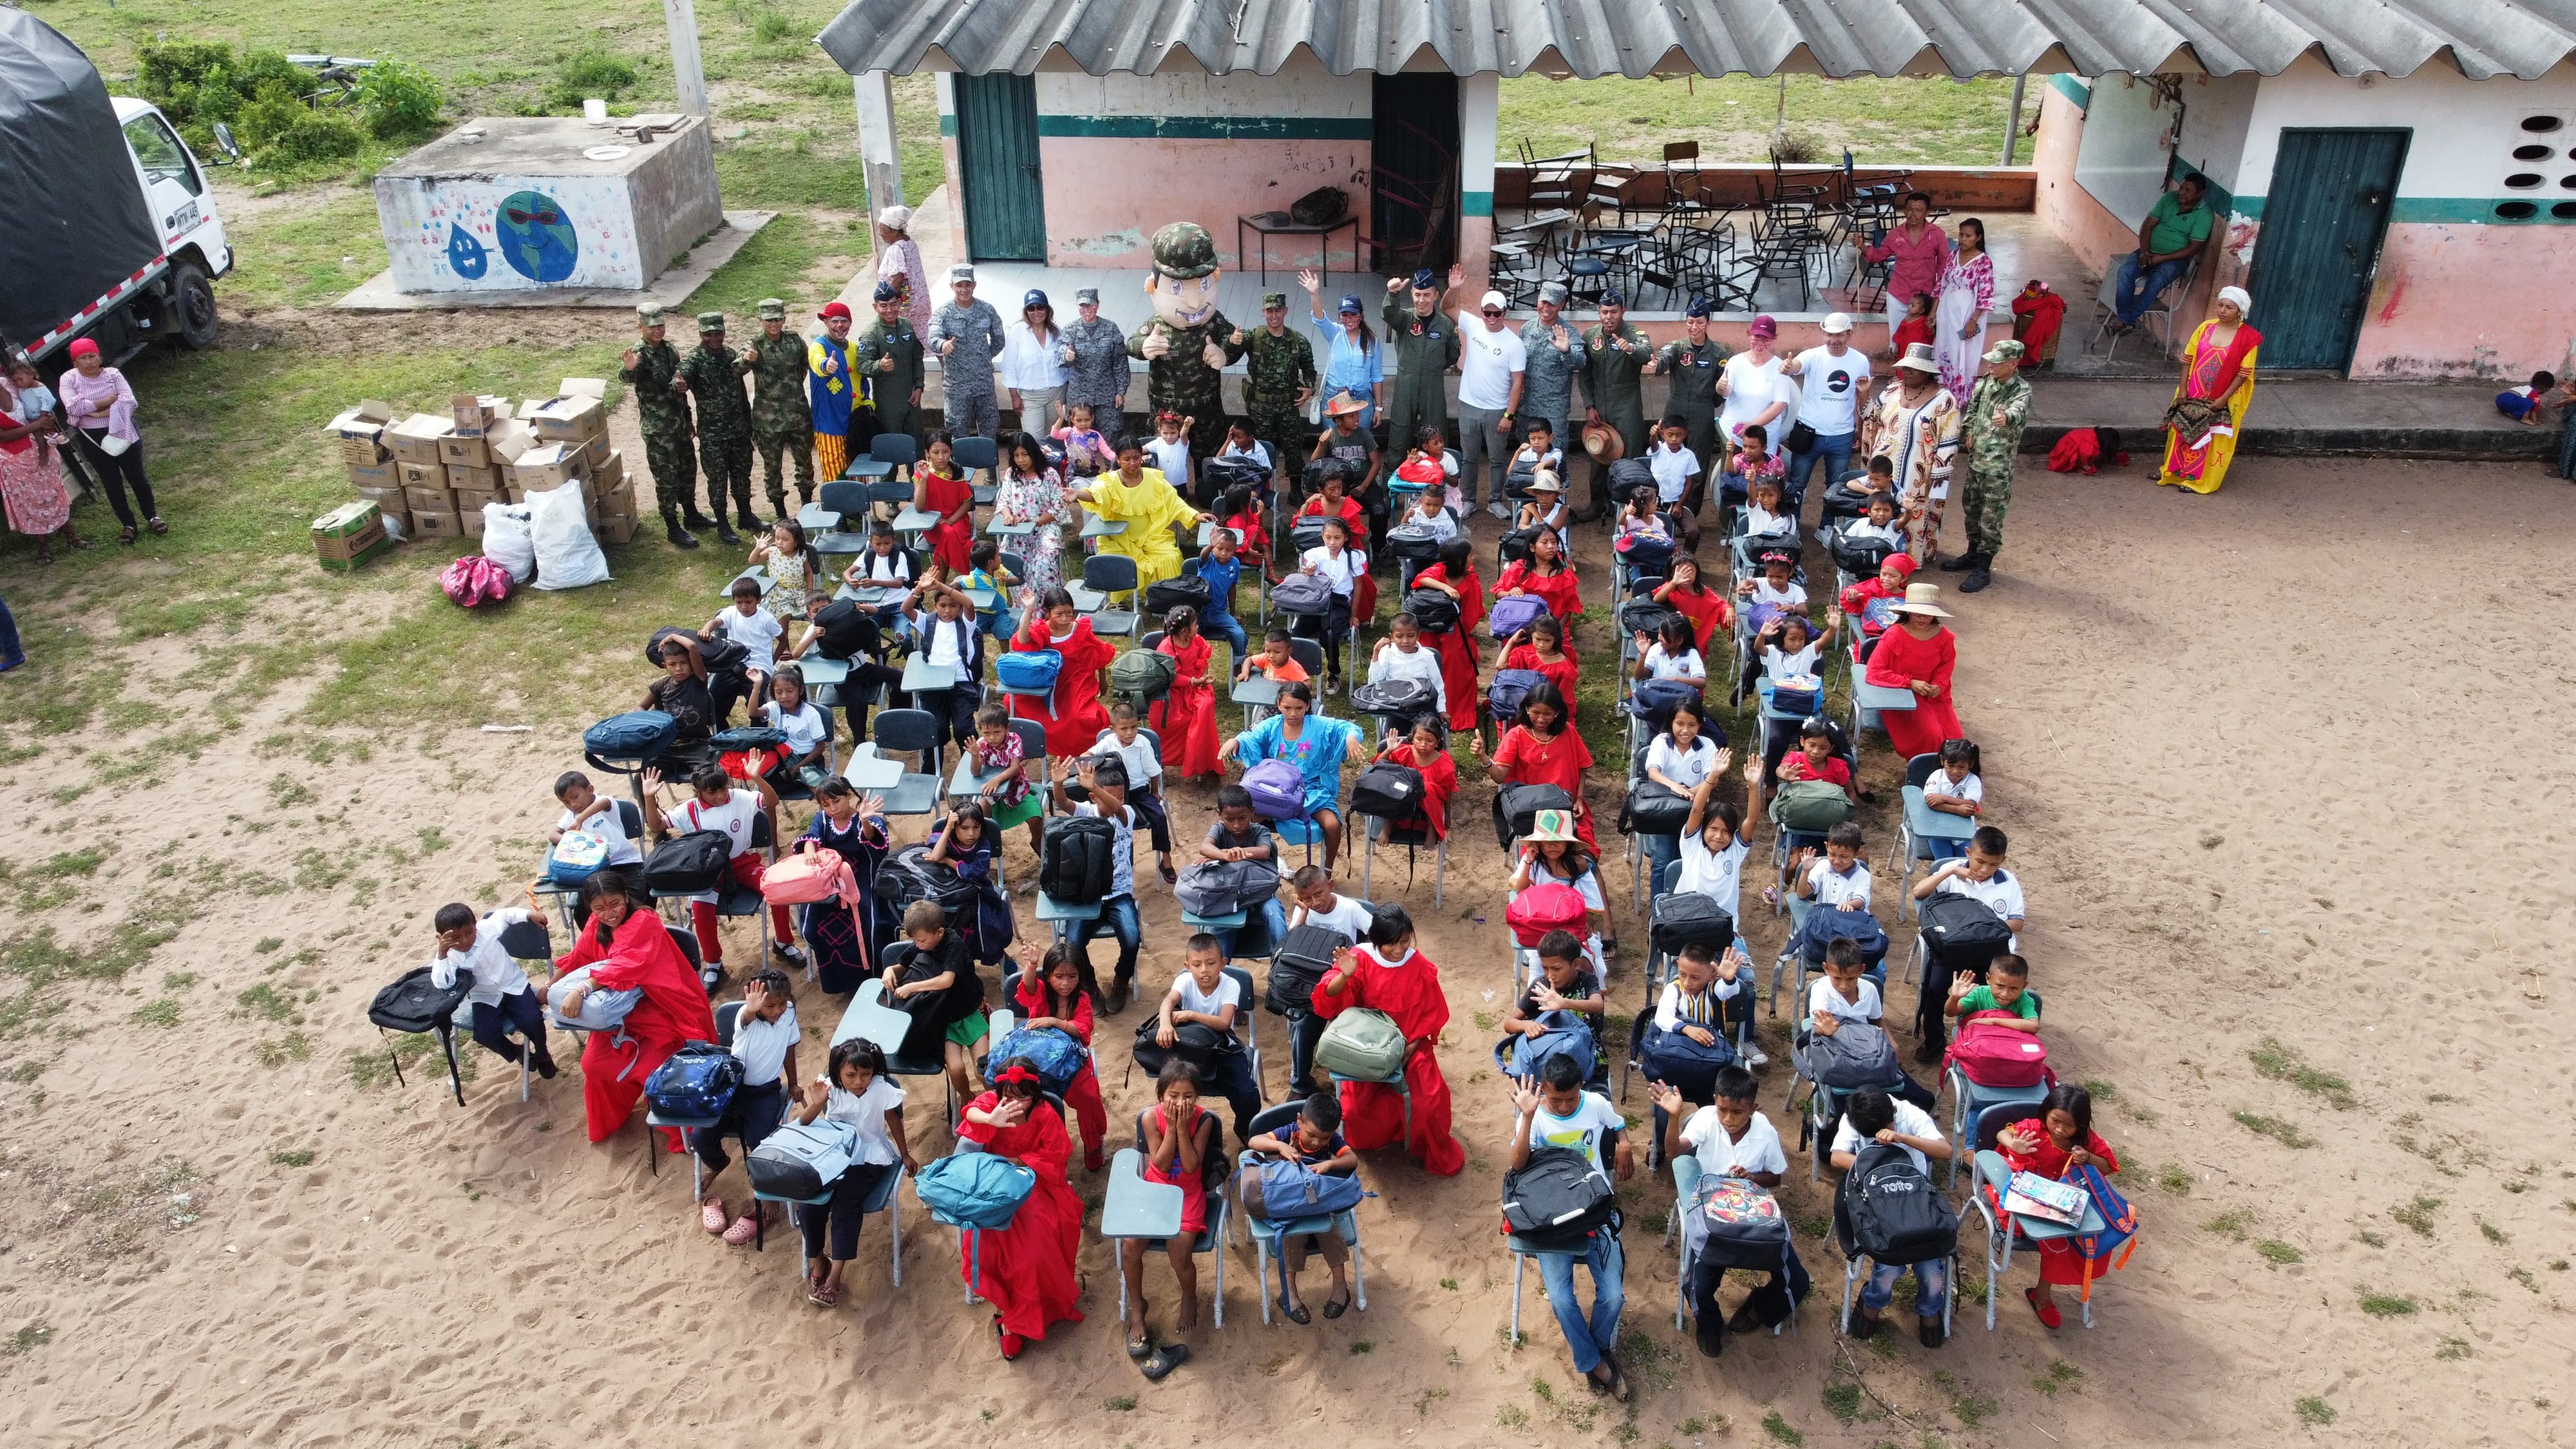 Pupitres y kits escolares llegaron a la Guajira en aeronave de la Fuerza Aeroespacial Colombiana